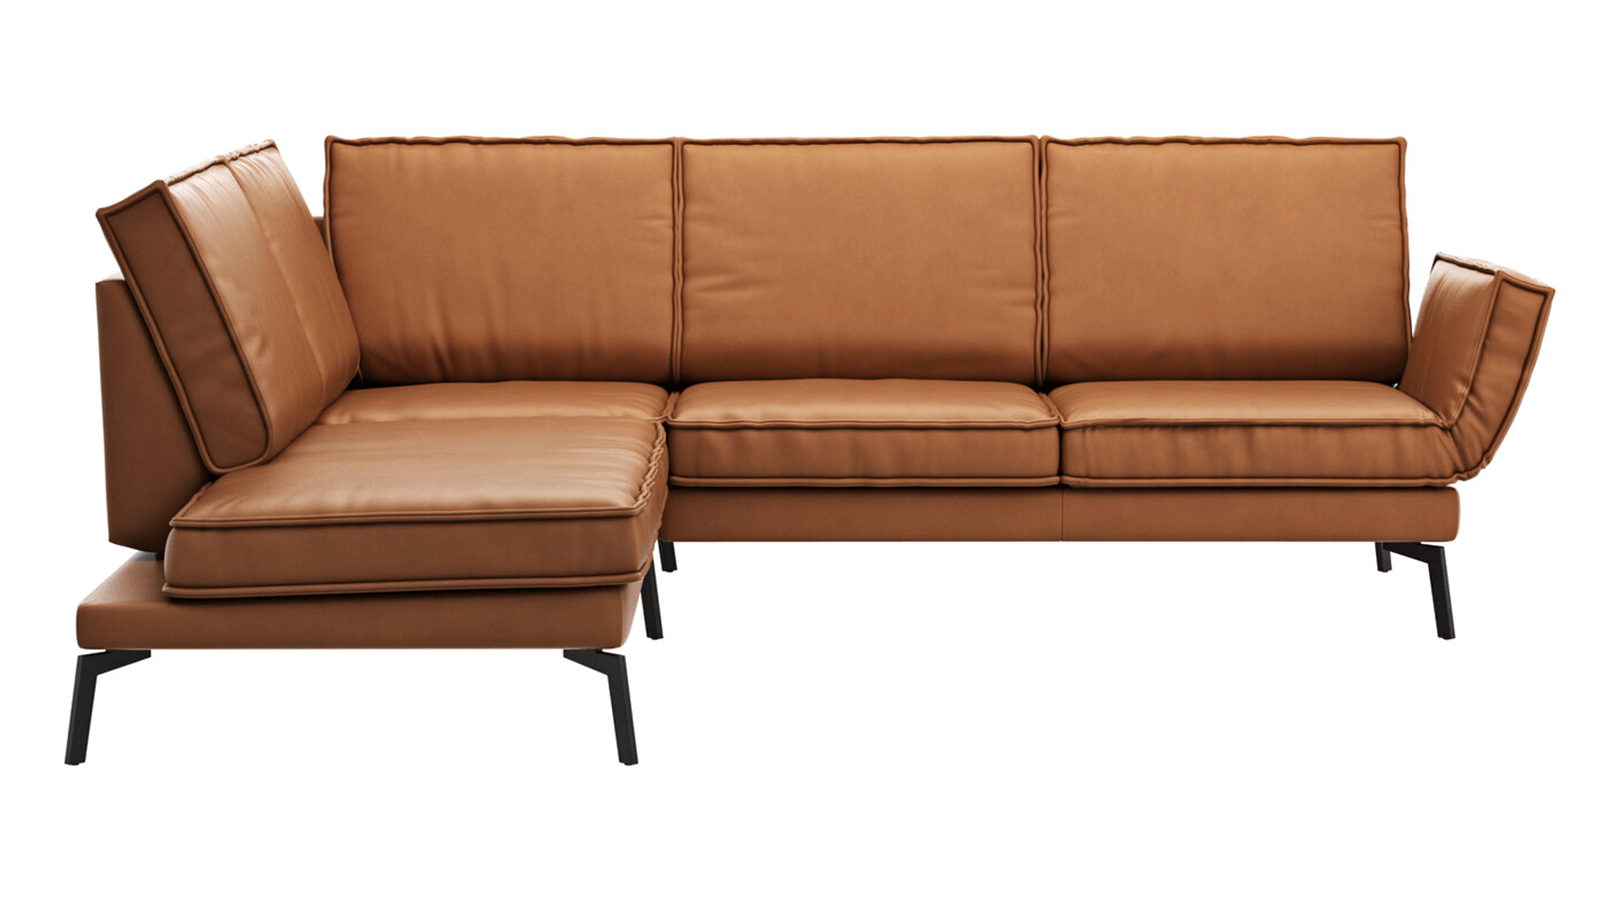 Kaufberatung: Stoff oder Leder Couch